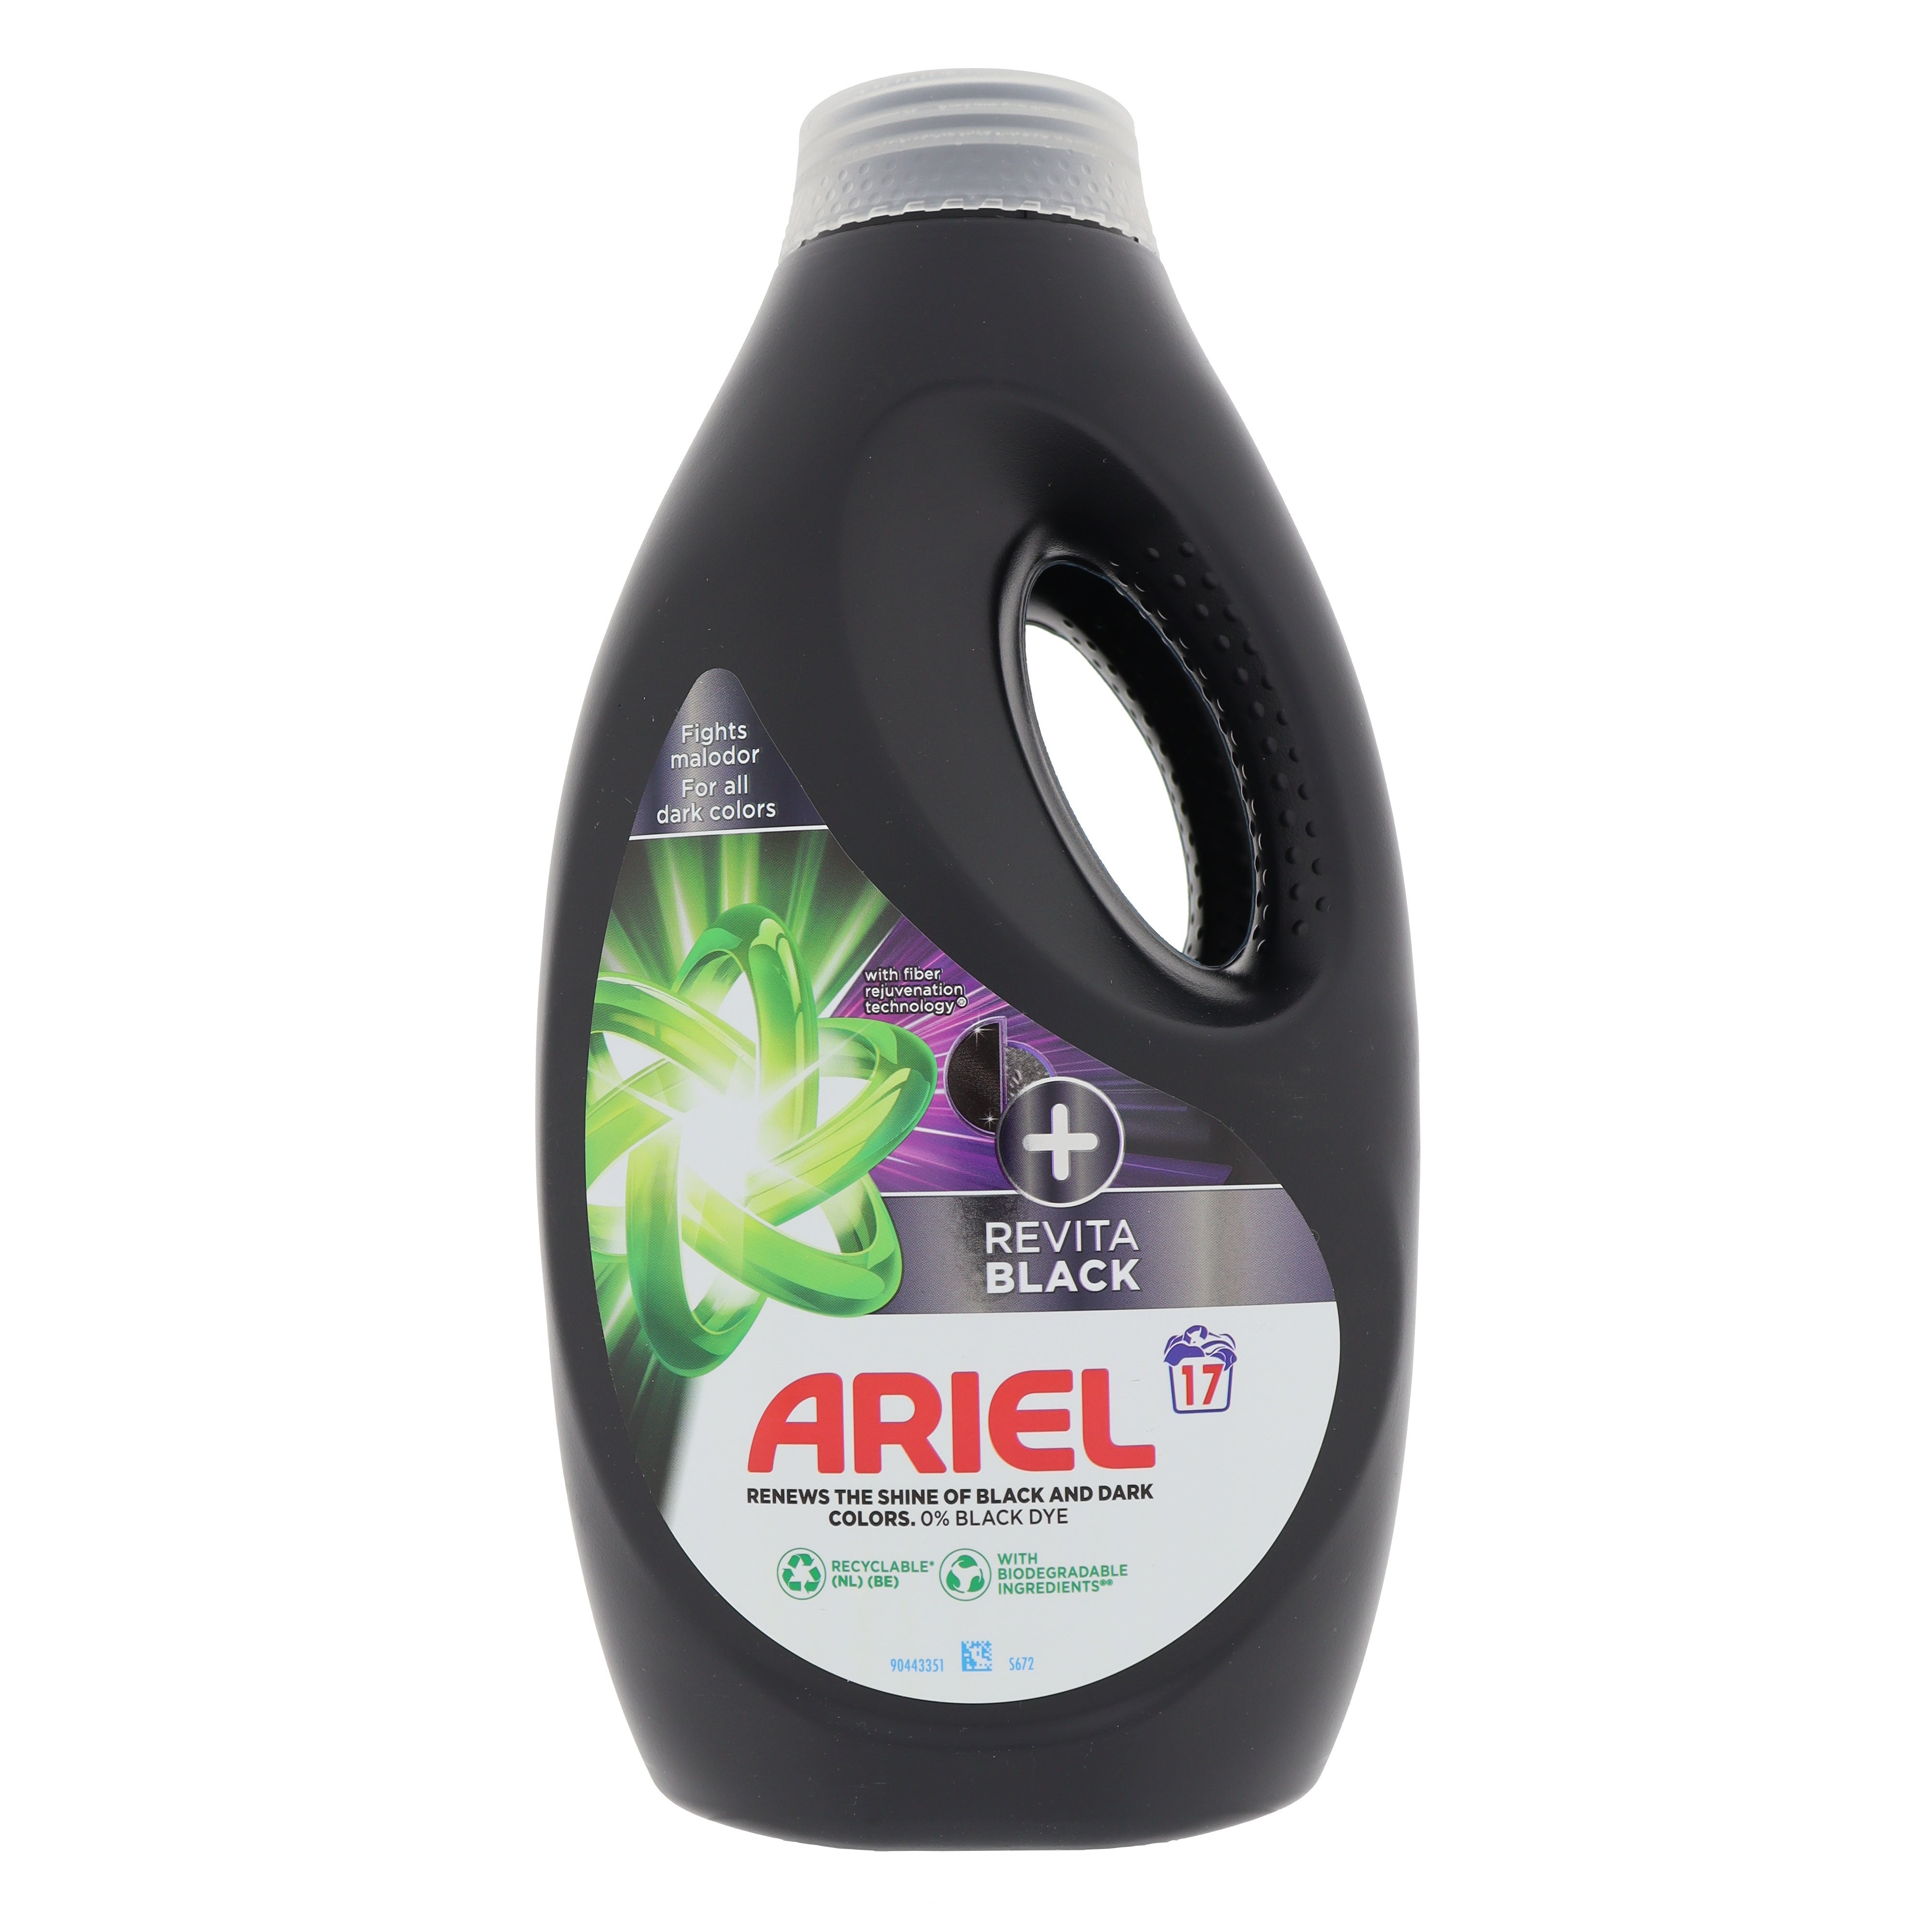 Ariel Revita Black 1 + 1 GRATIS vloeibaar wasmiddel 765ML 17 wasbeurten